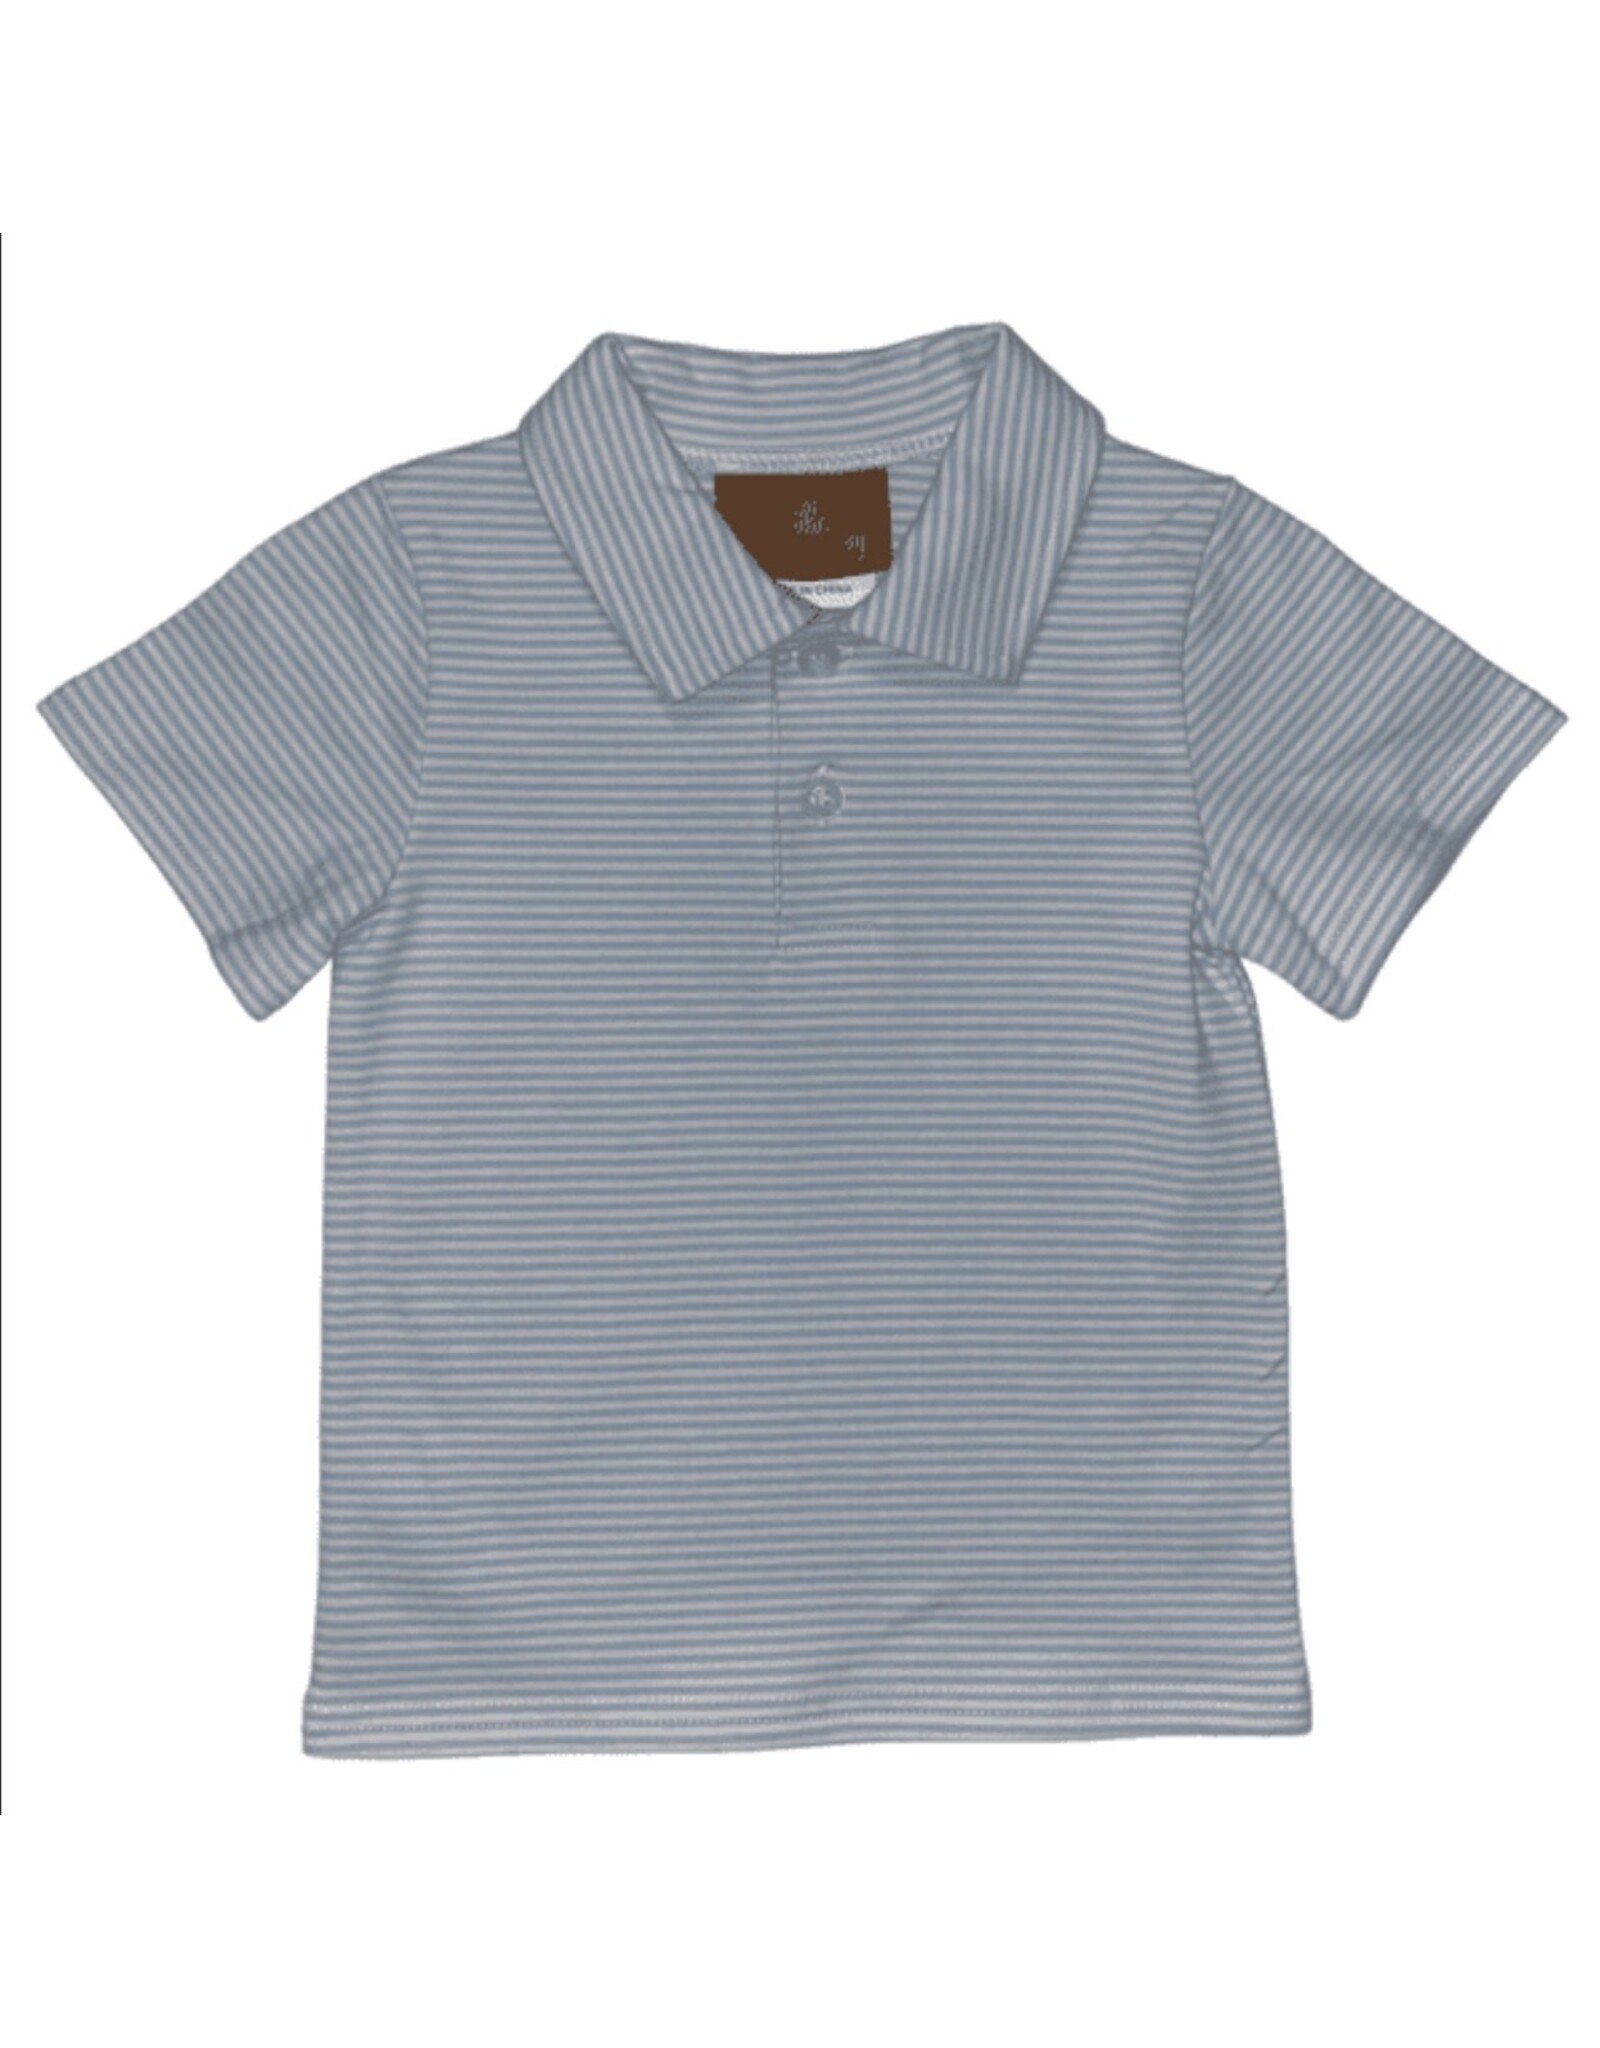 Millie Jay Millie Jay- Bennett Shirt: Lt. Blue Stripe